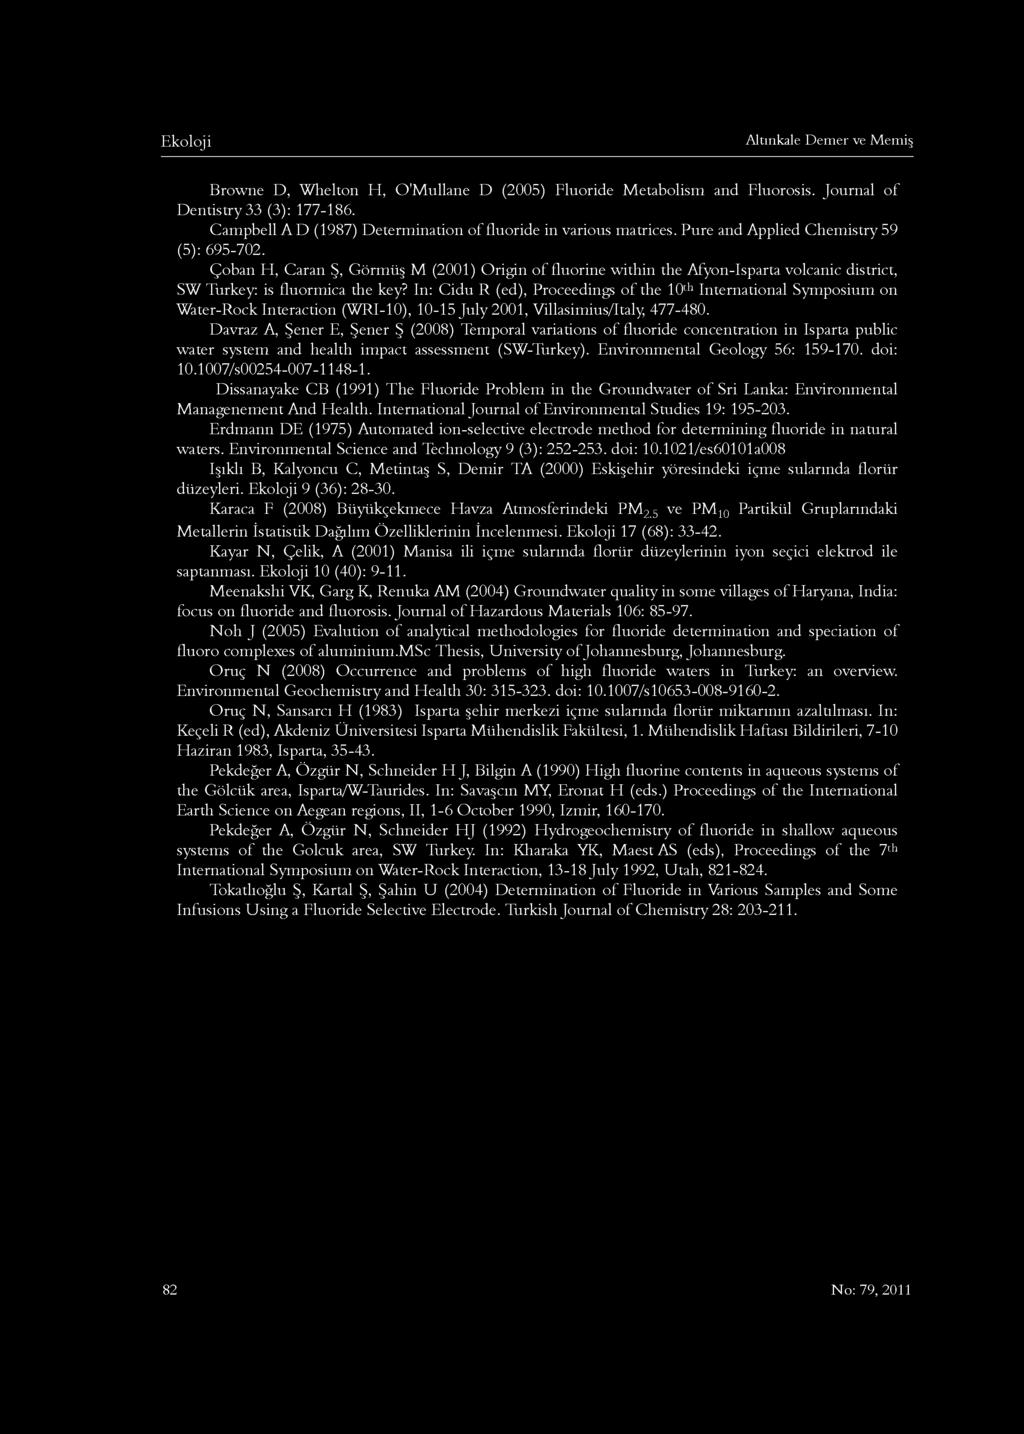 Altınkale Demer ve Memiş Browne D, Whelton H, O'Mullane D (2005) Fluoride Metabolism and Fluorosis. Journal of Dentistry 33 (3): 177-186.